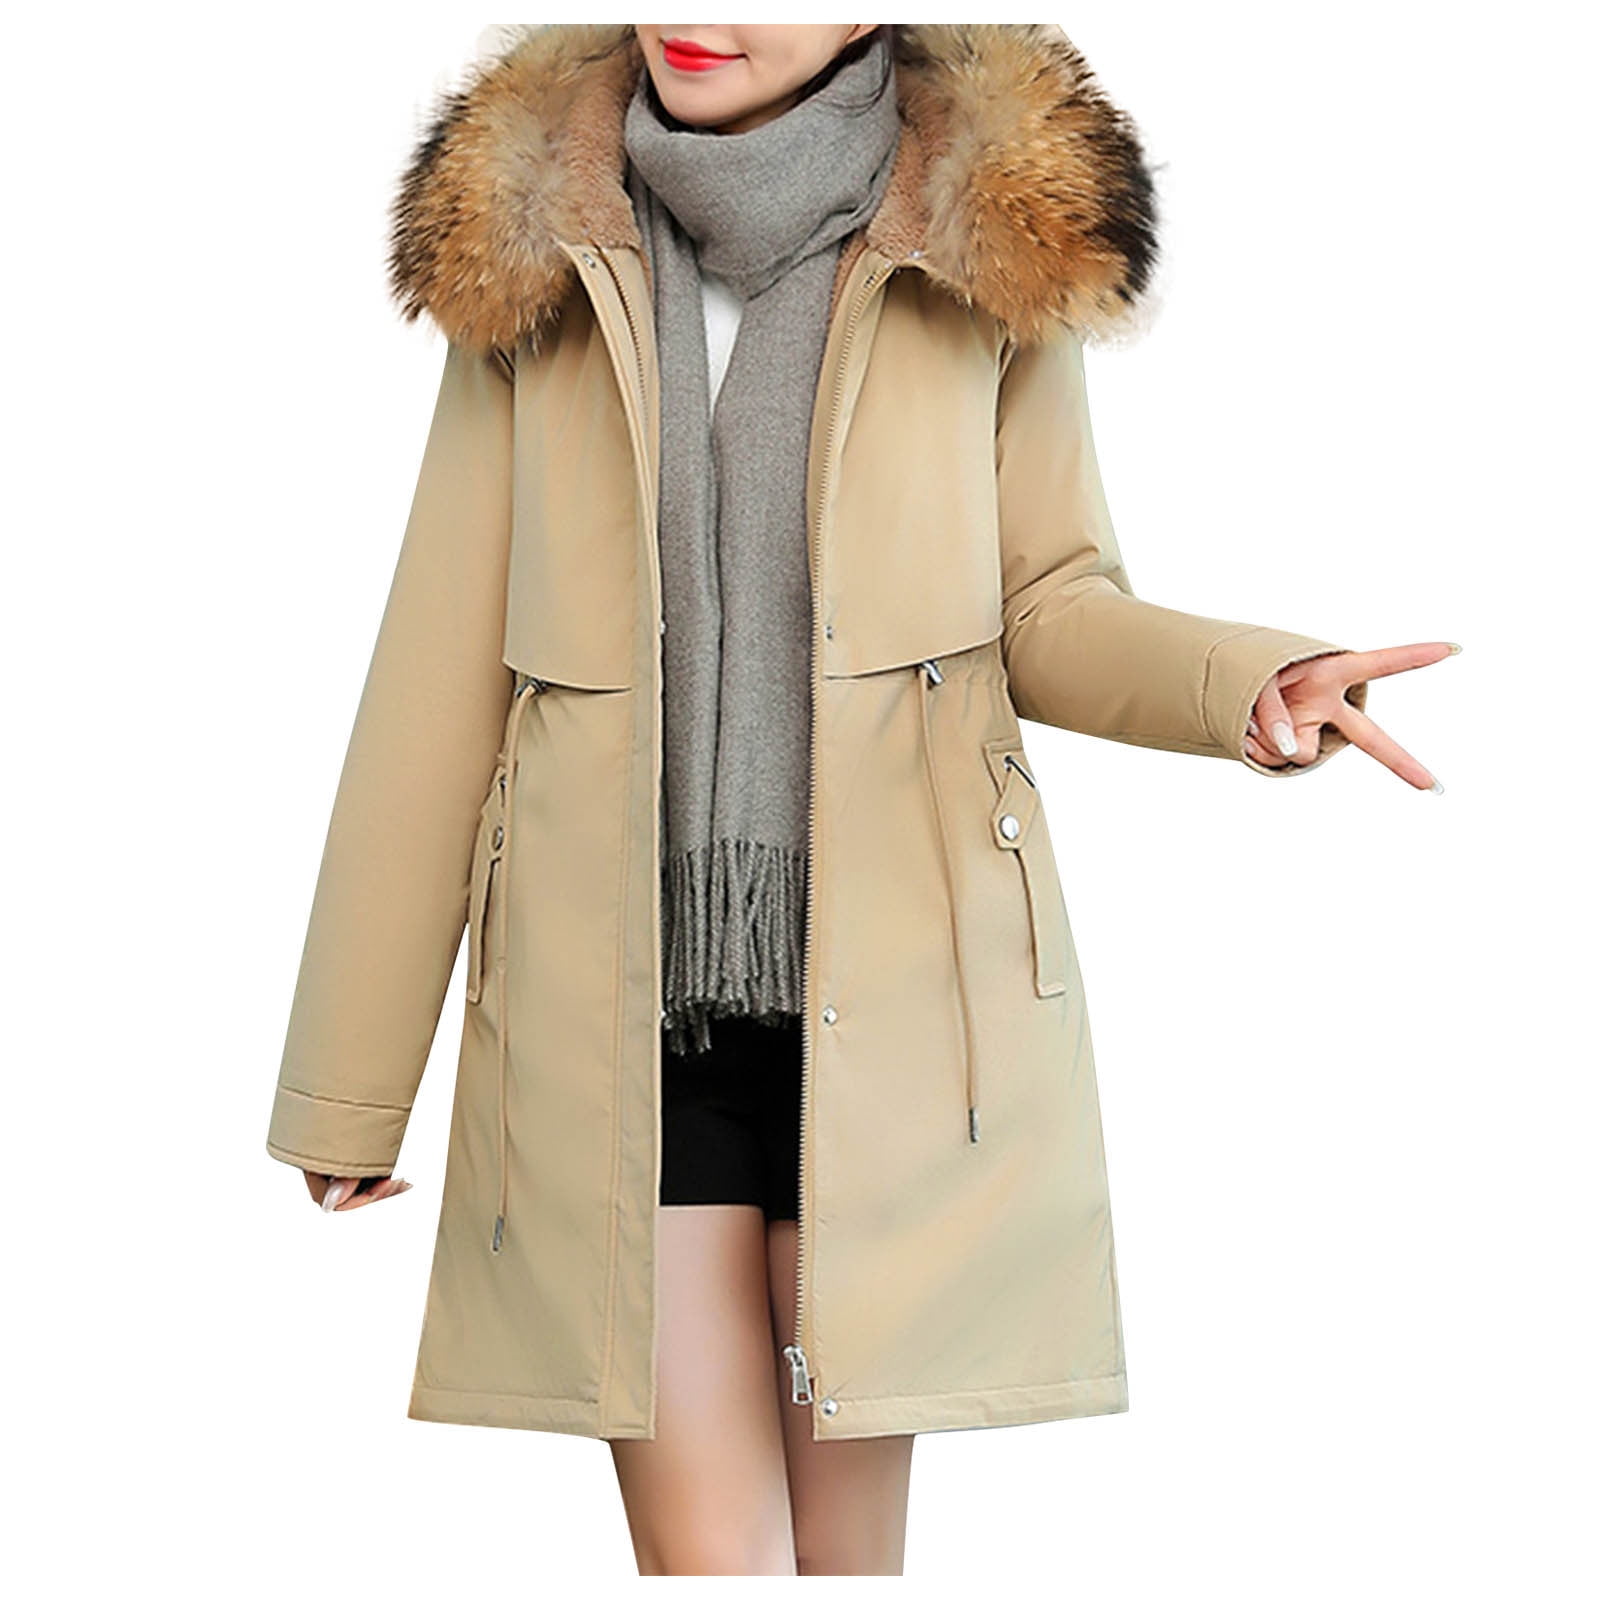 US Women Warm Coats Winter Parka Cotton-padded Hooded Jacket Outwear Overcoat